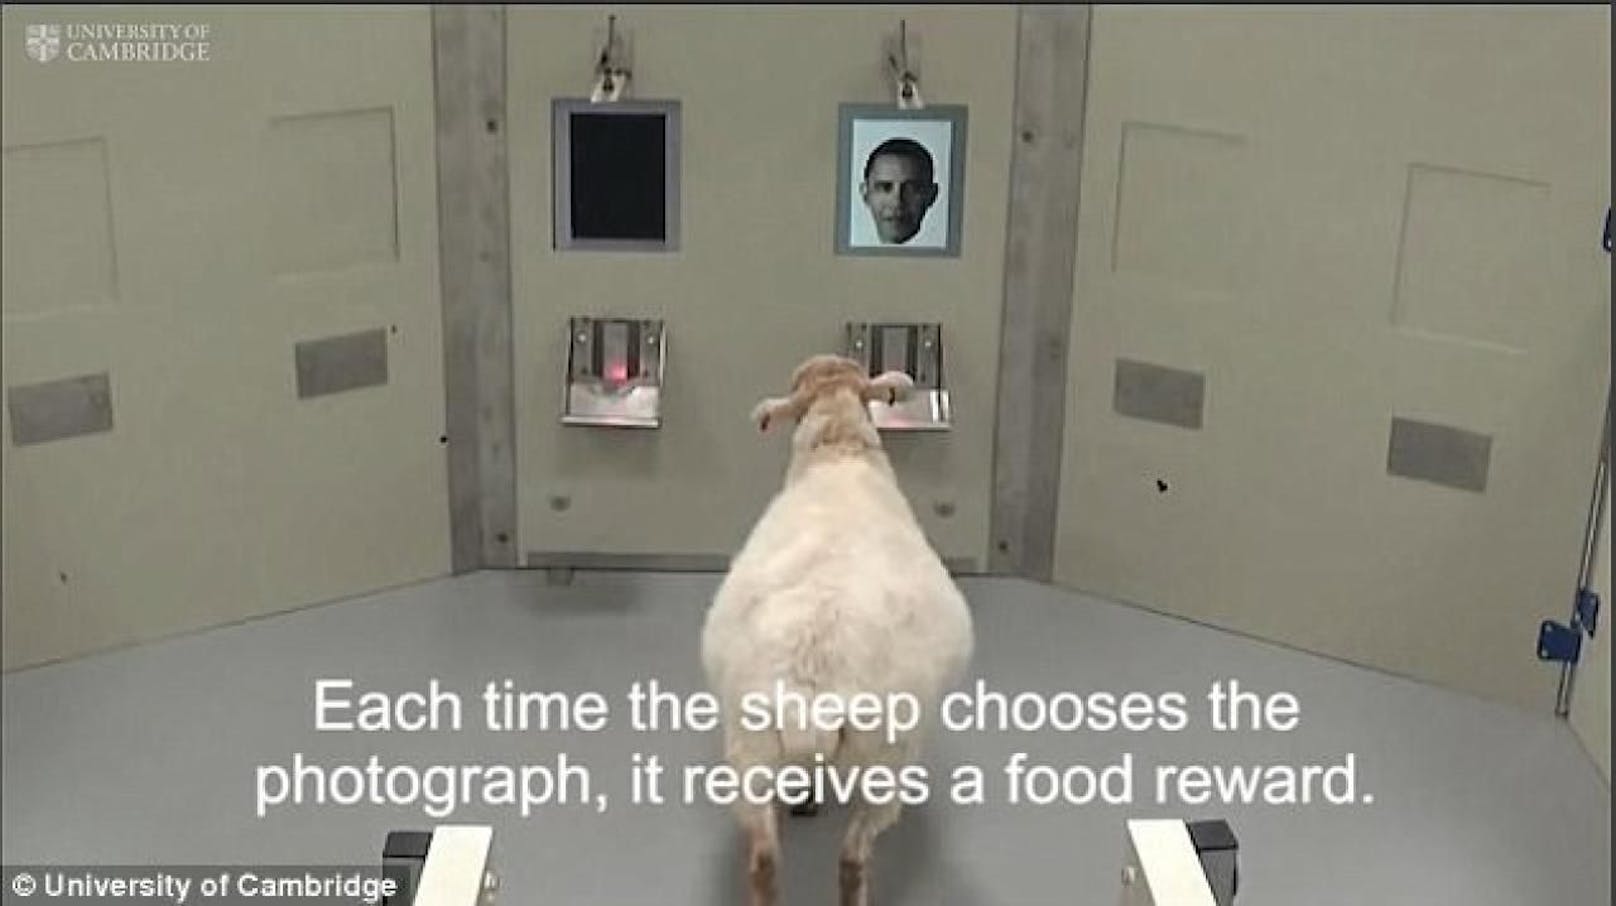 Clevere Tiere: Die Schafe erkannten beim Uni-Text fast alle Promis und bekamen dafür eine Leckerei. 